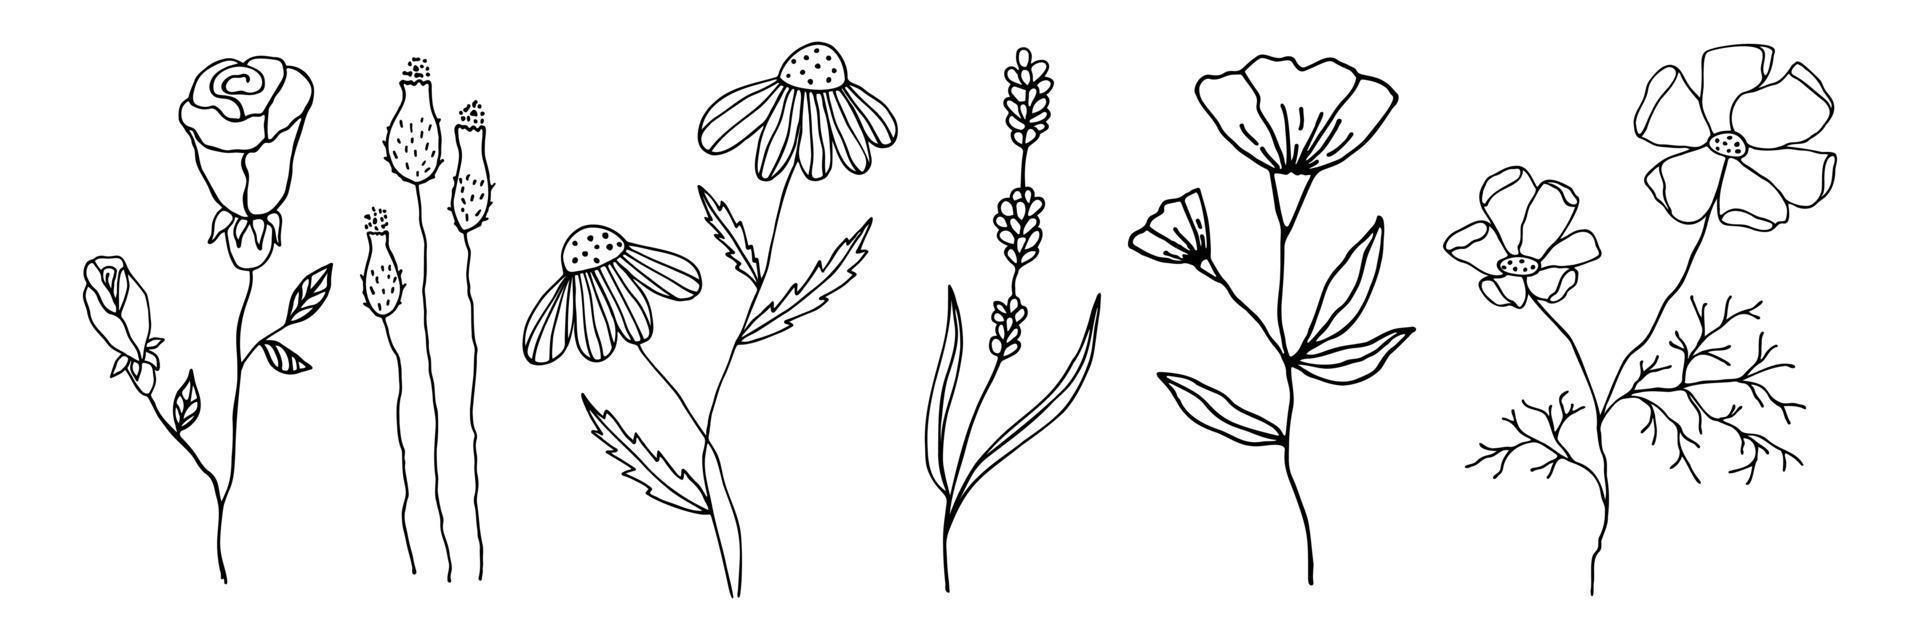 samling av doodle blommor i linjär stil. uppsättning blommiga element för alla mönster. vektor svart kontur blommor handritad isolerad på vit bakgrund.